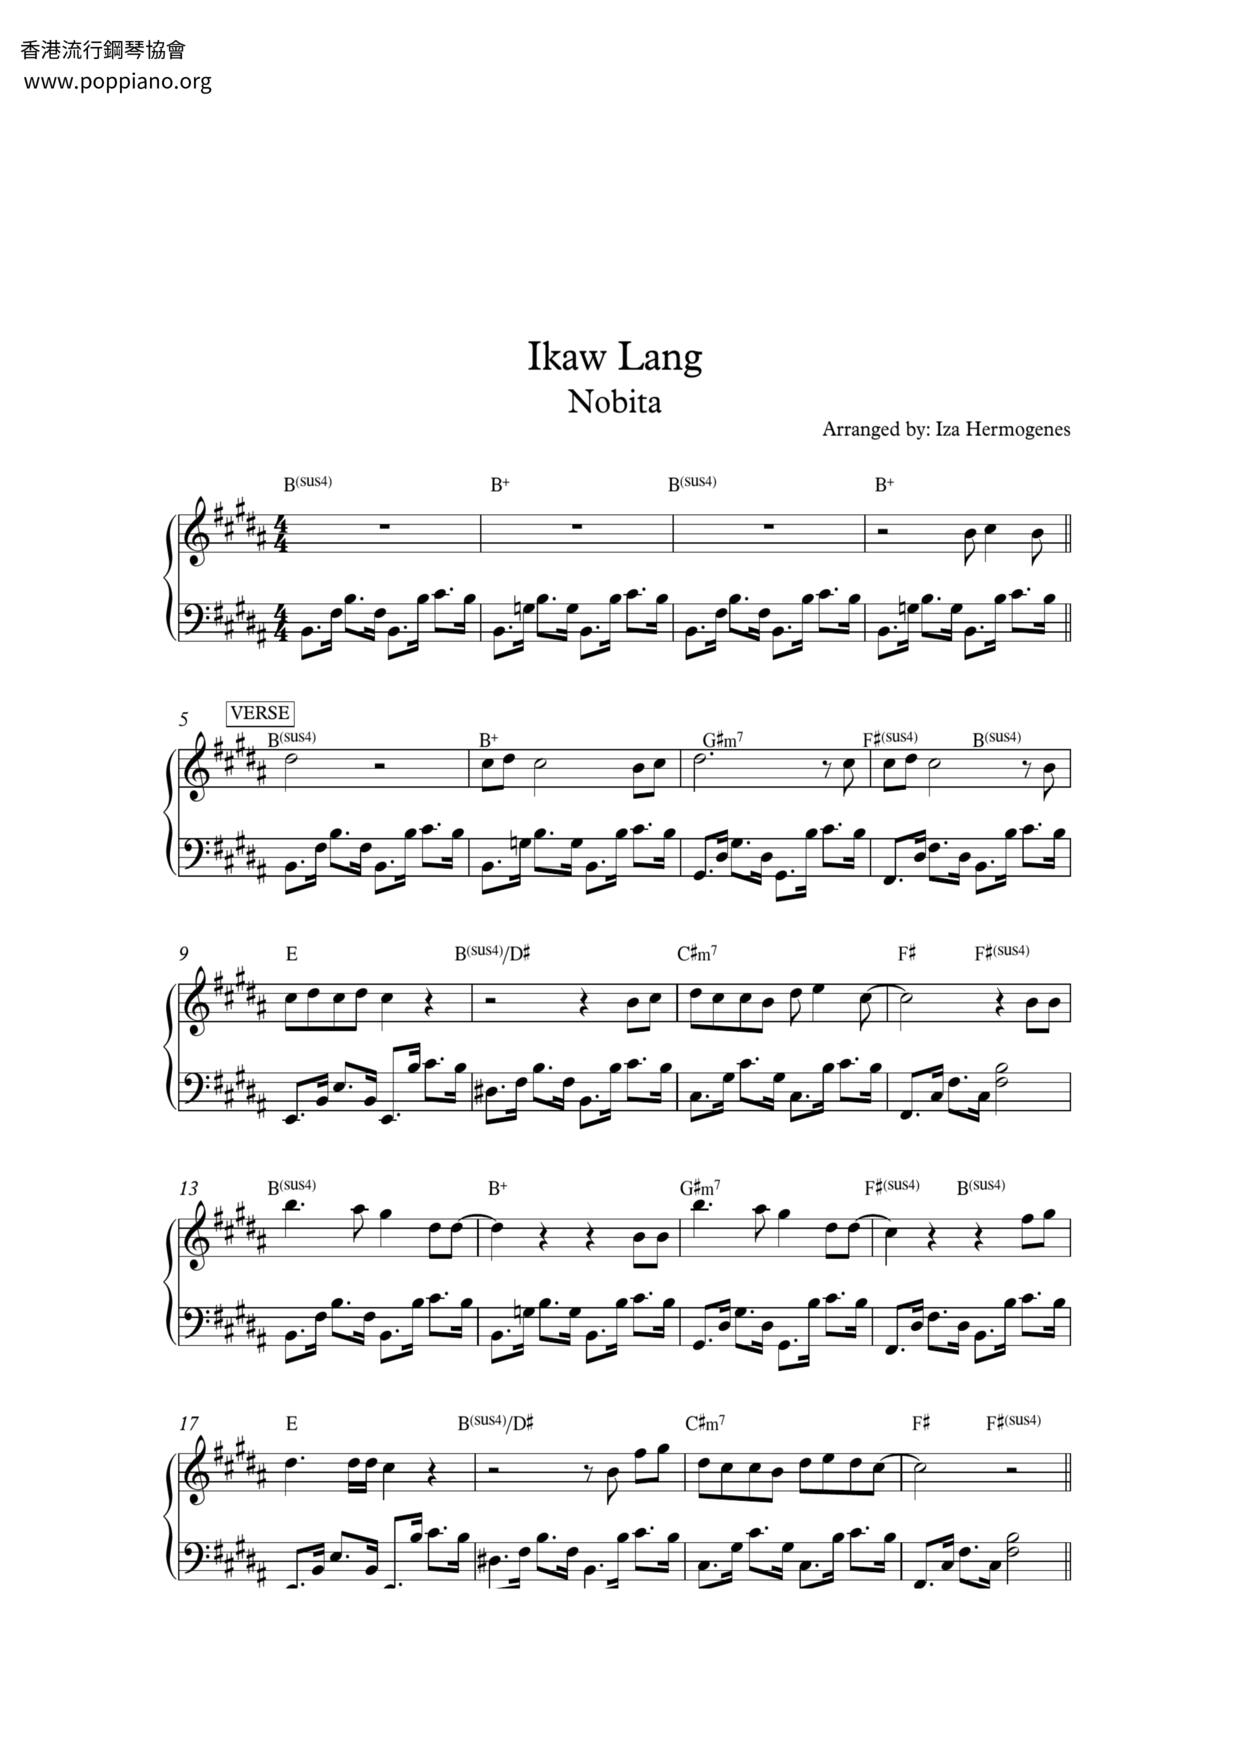 Ikaw Langピアノ譜